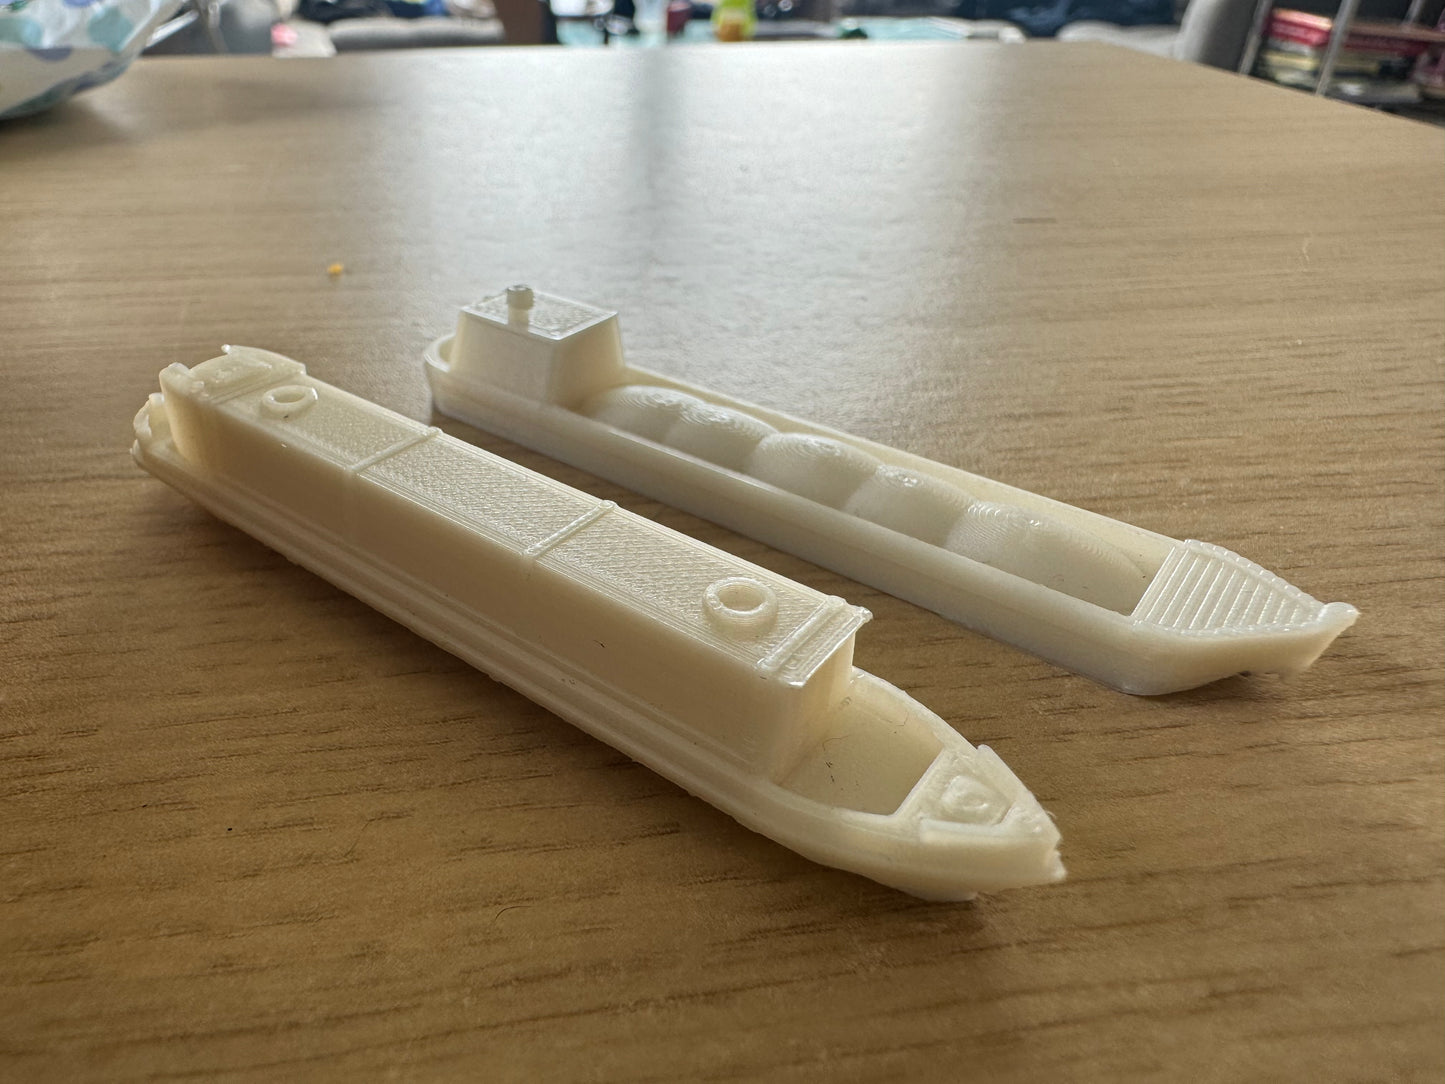 3D Printed (N Scale) Unpainted Narrow Boats Bundle